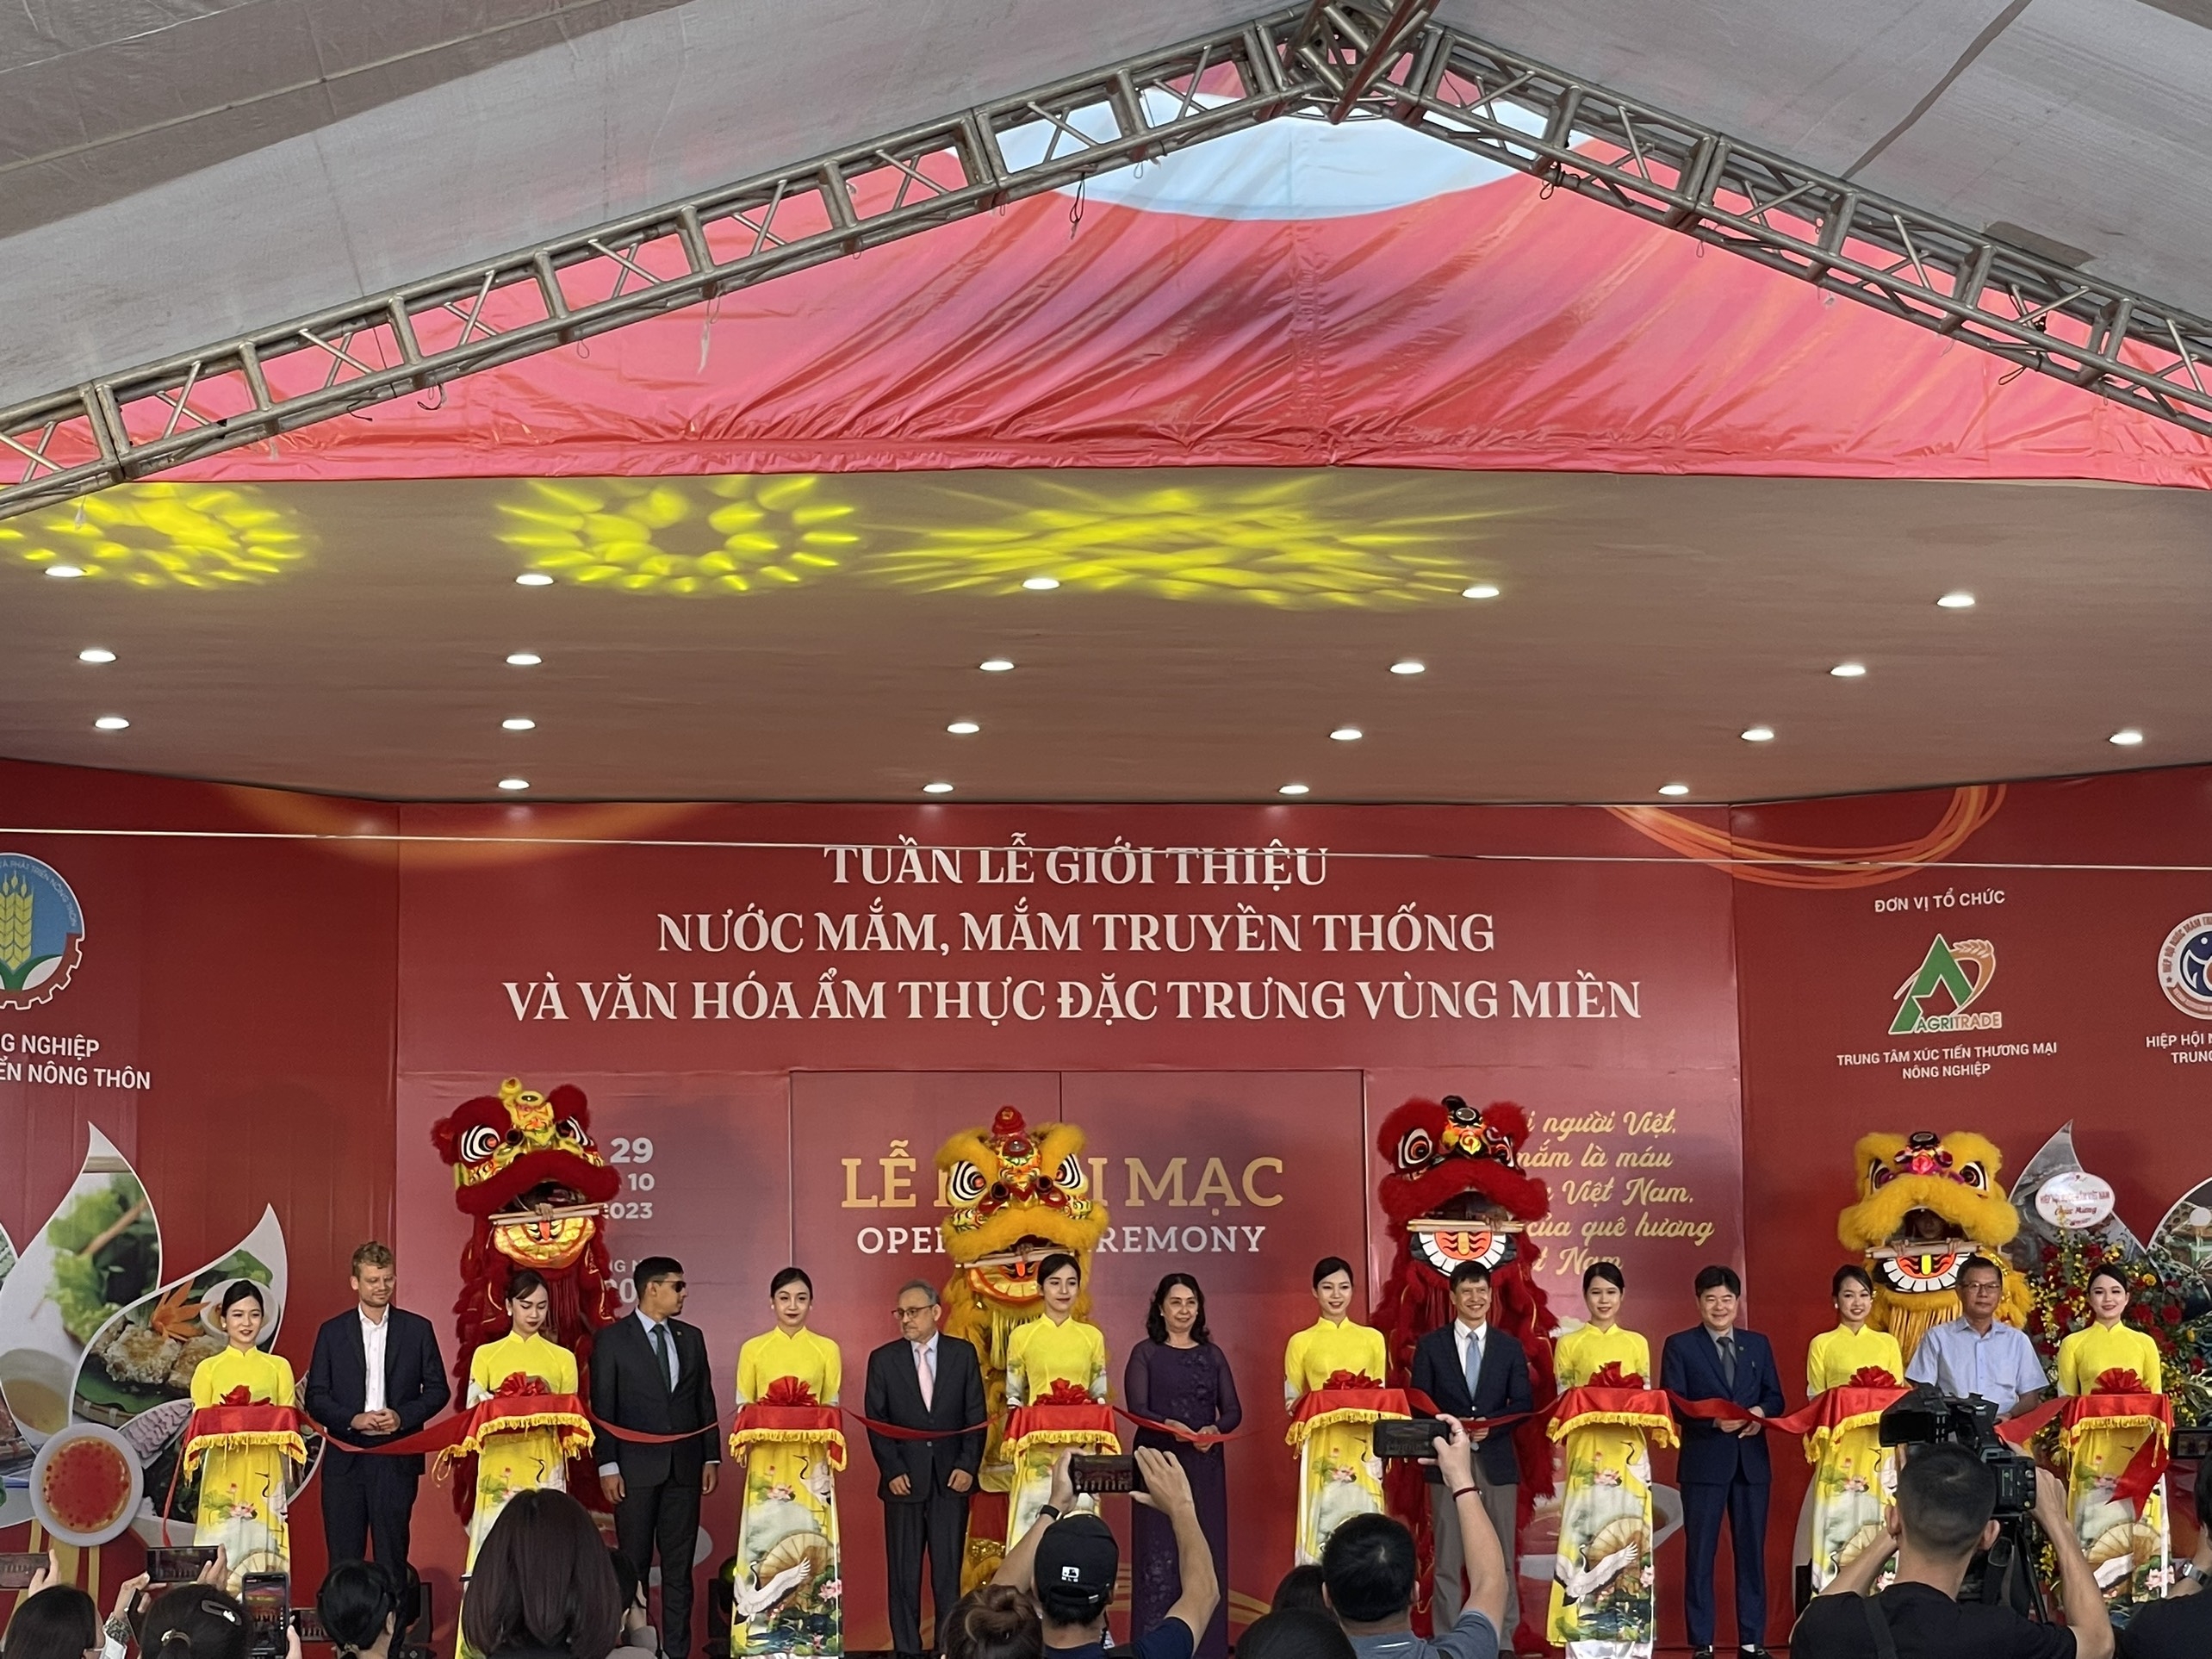 Tuần lễ giới thiệu, kết nối ẩm thực nông sản Việt Nam Cùng Nông Sản Donavi tại 489 Hoàng Quốc Việt, Hà Nội